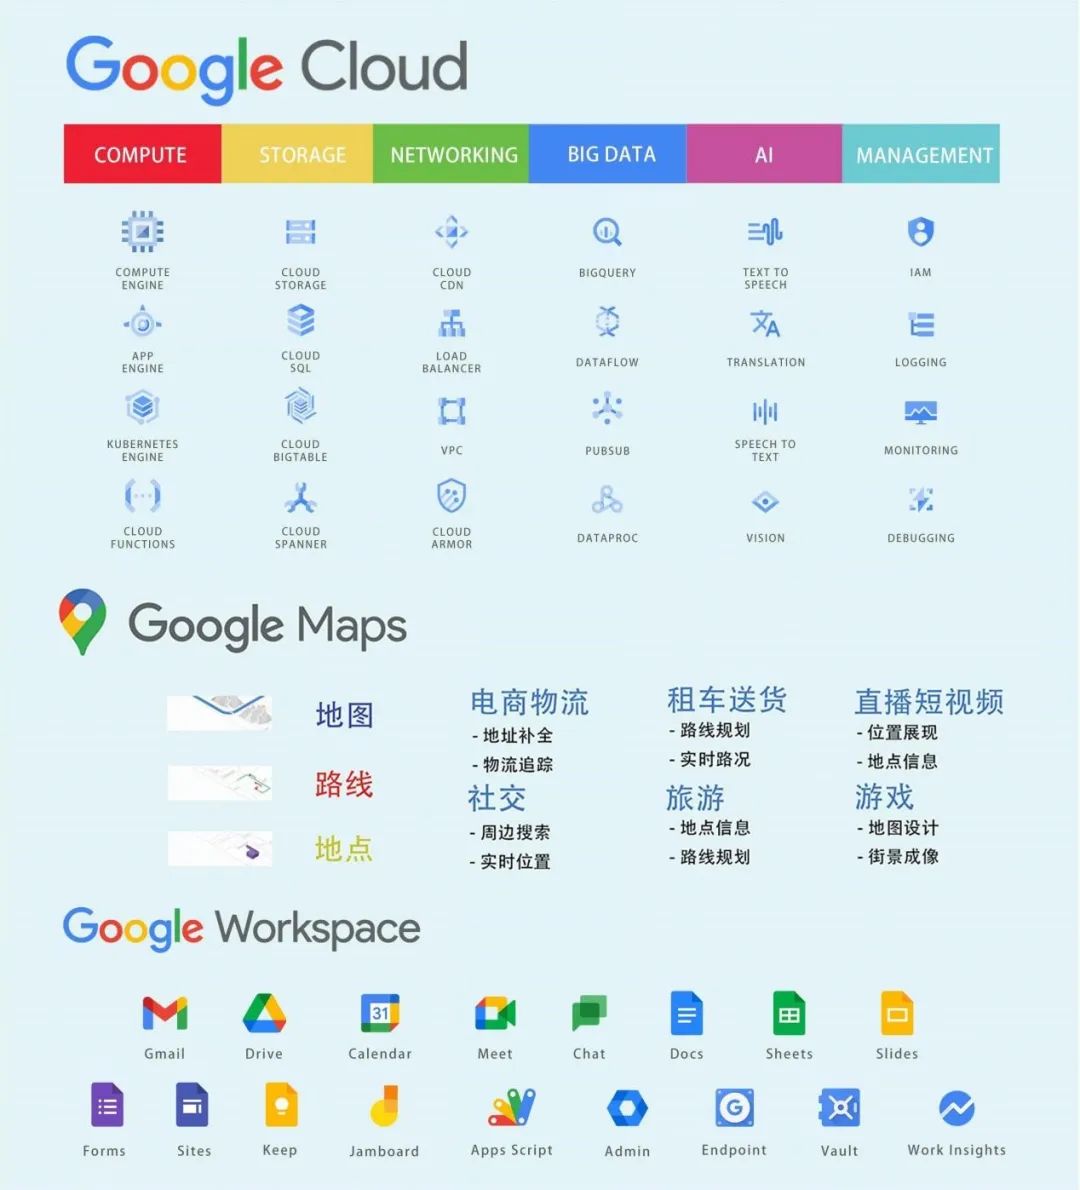 Cloud Ace-谷歌云全球战略合作伙伴